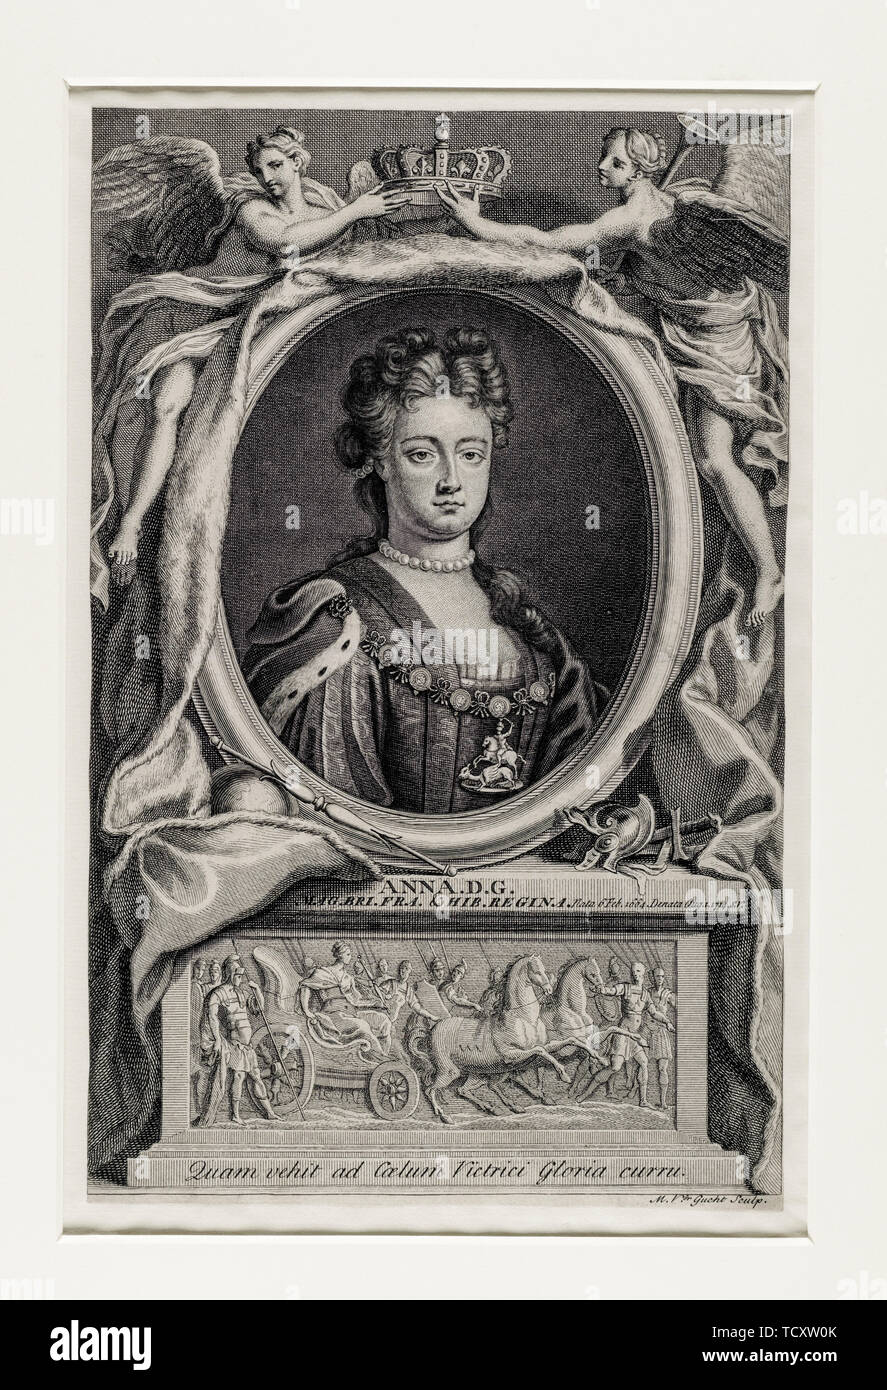 Anonimo artista, Giacobita costeggiata, Queen Anne, 1665- 1714, regnò 1702-1714, ritratto incisione, 1715 Foto Stock